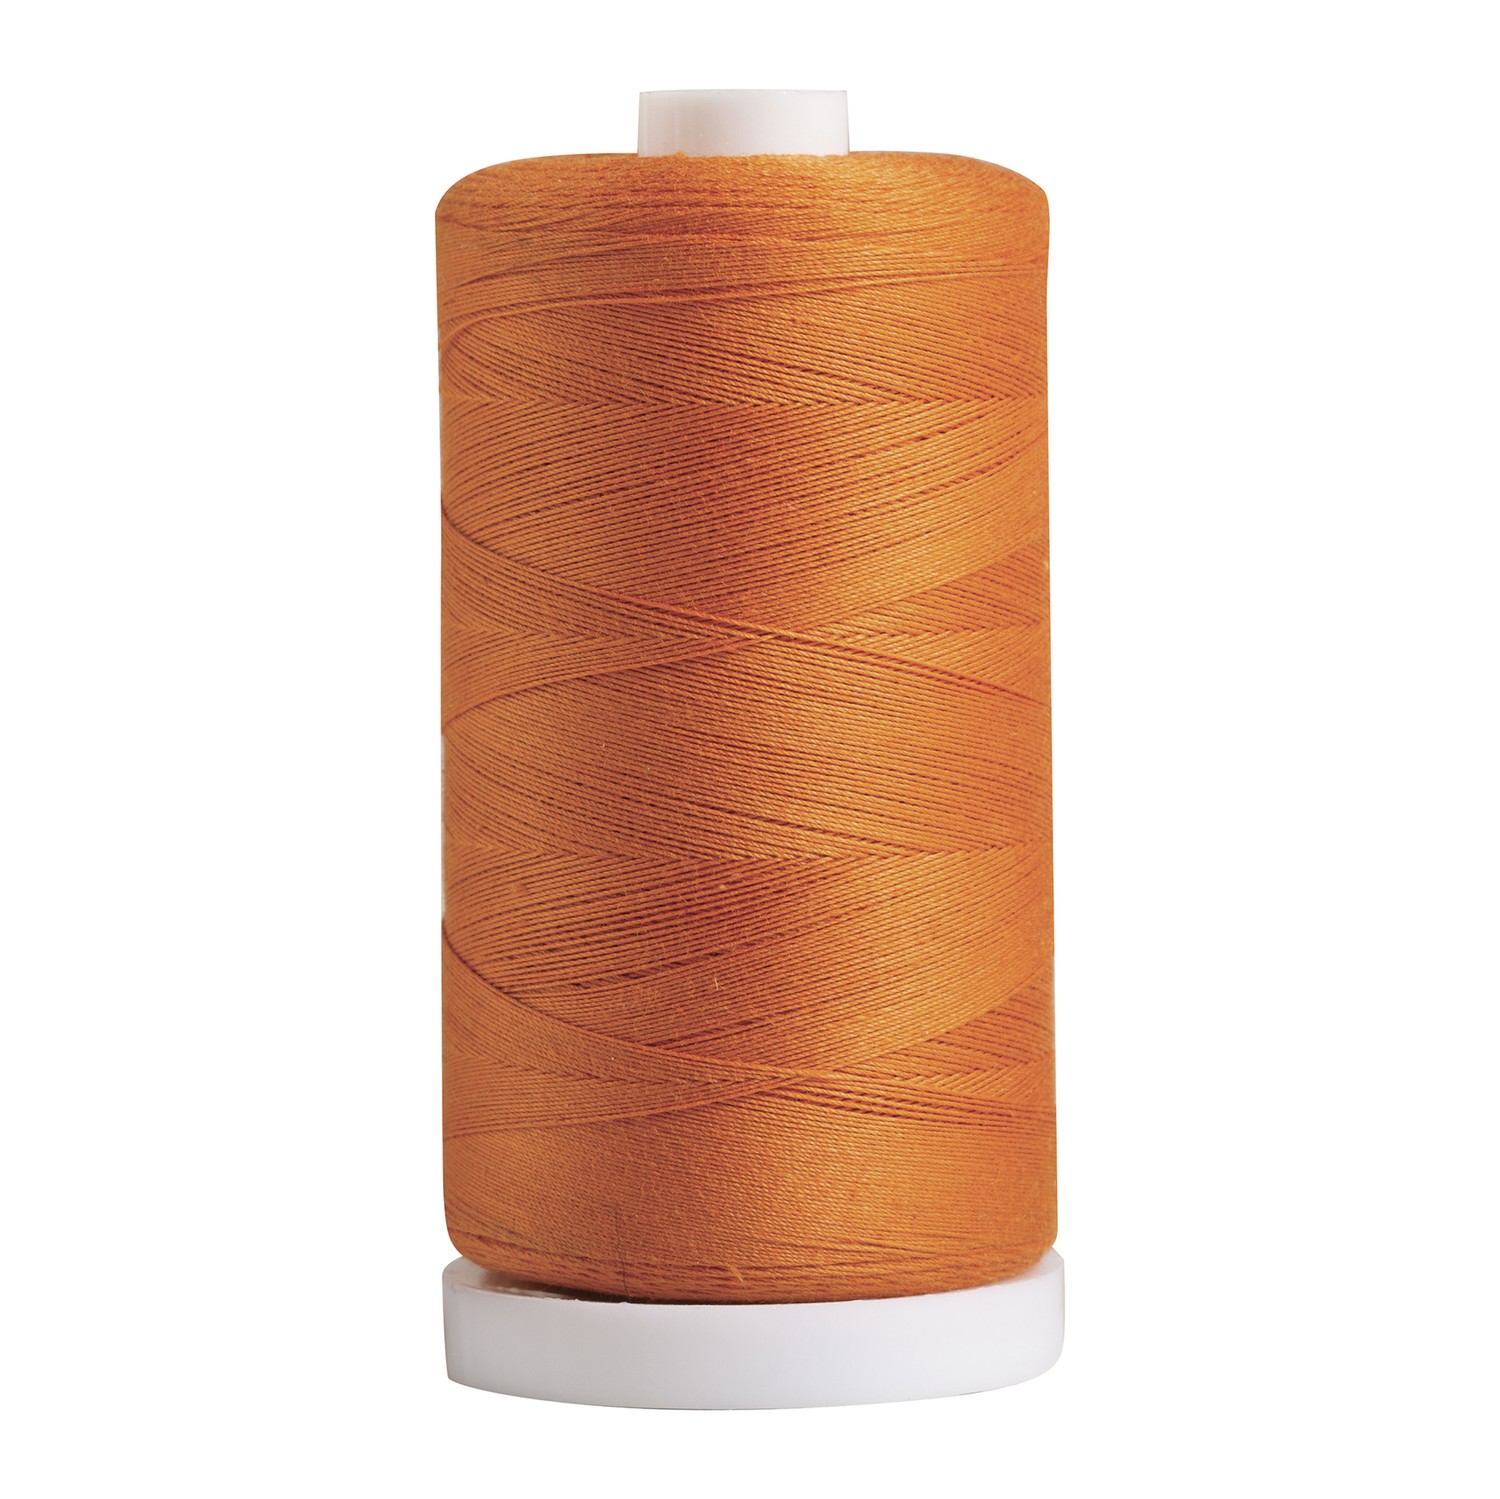 Essential Quilting Thread - Honeysuckle